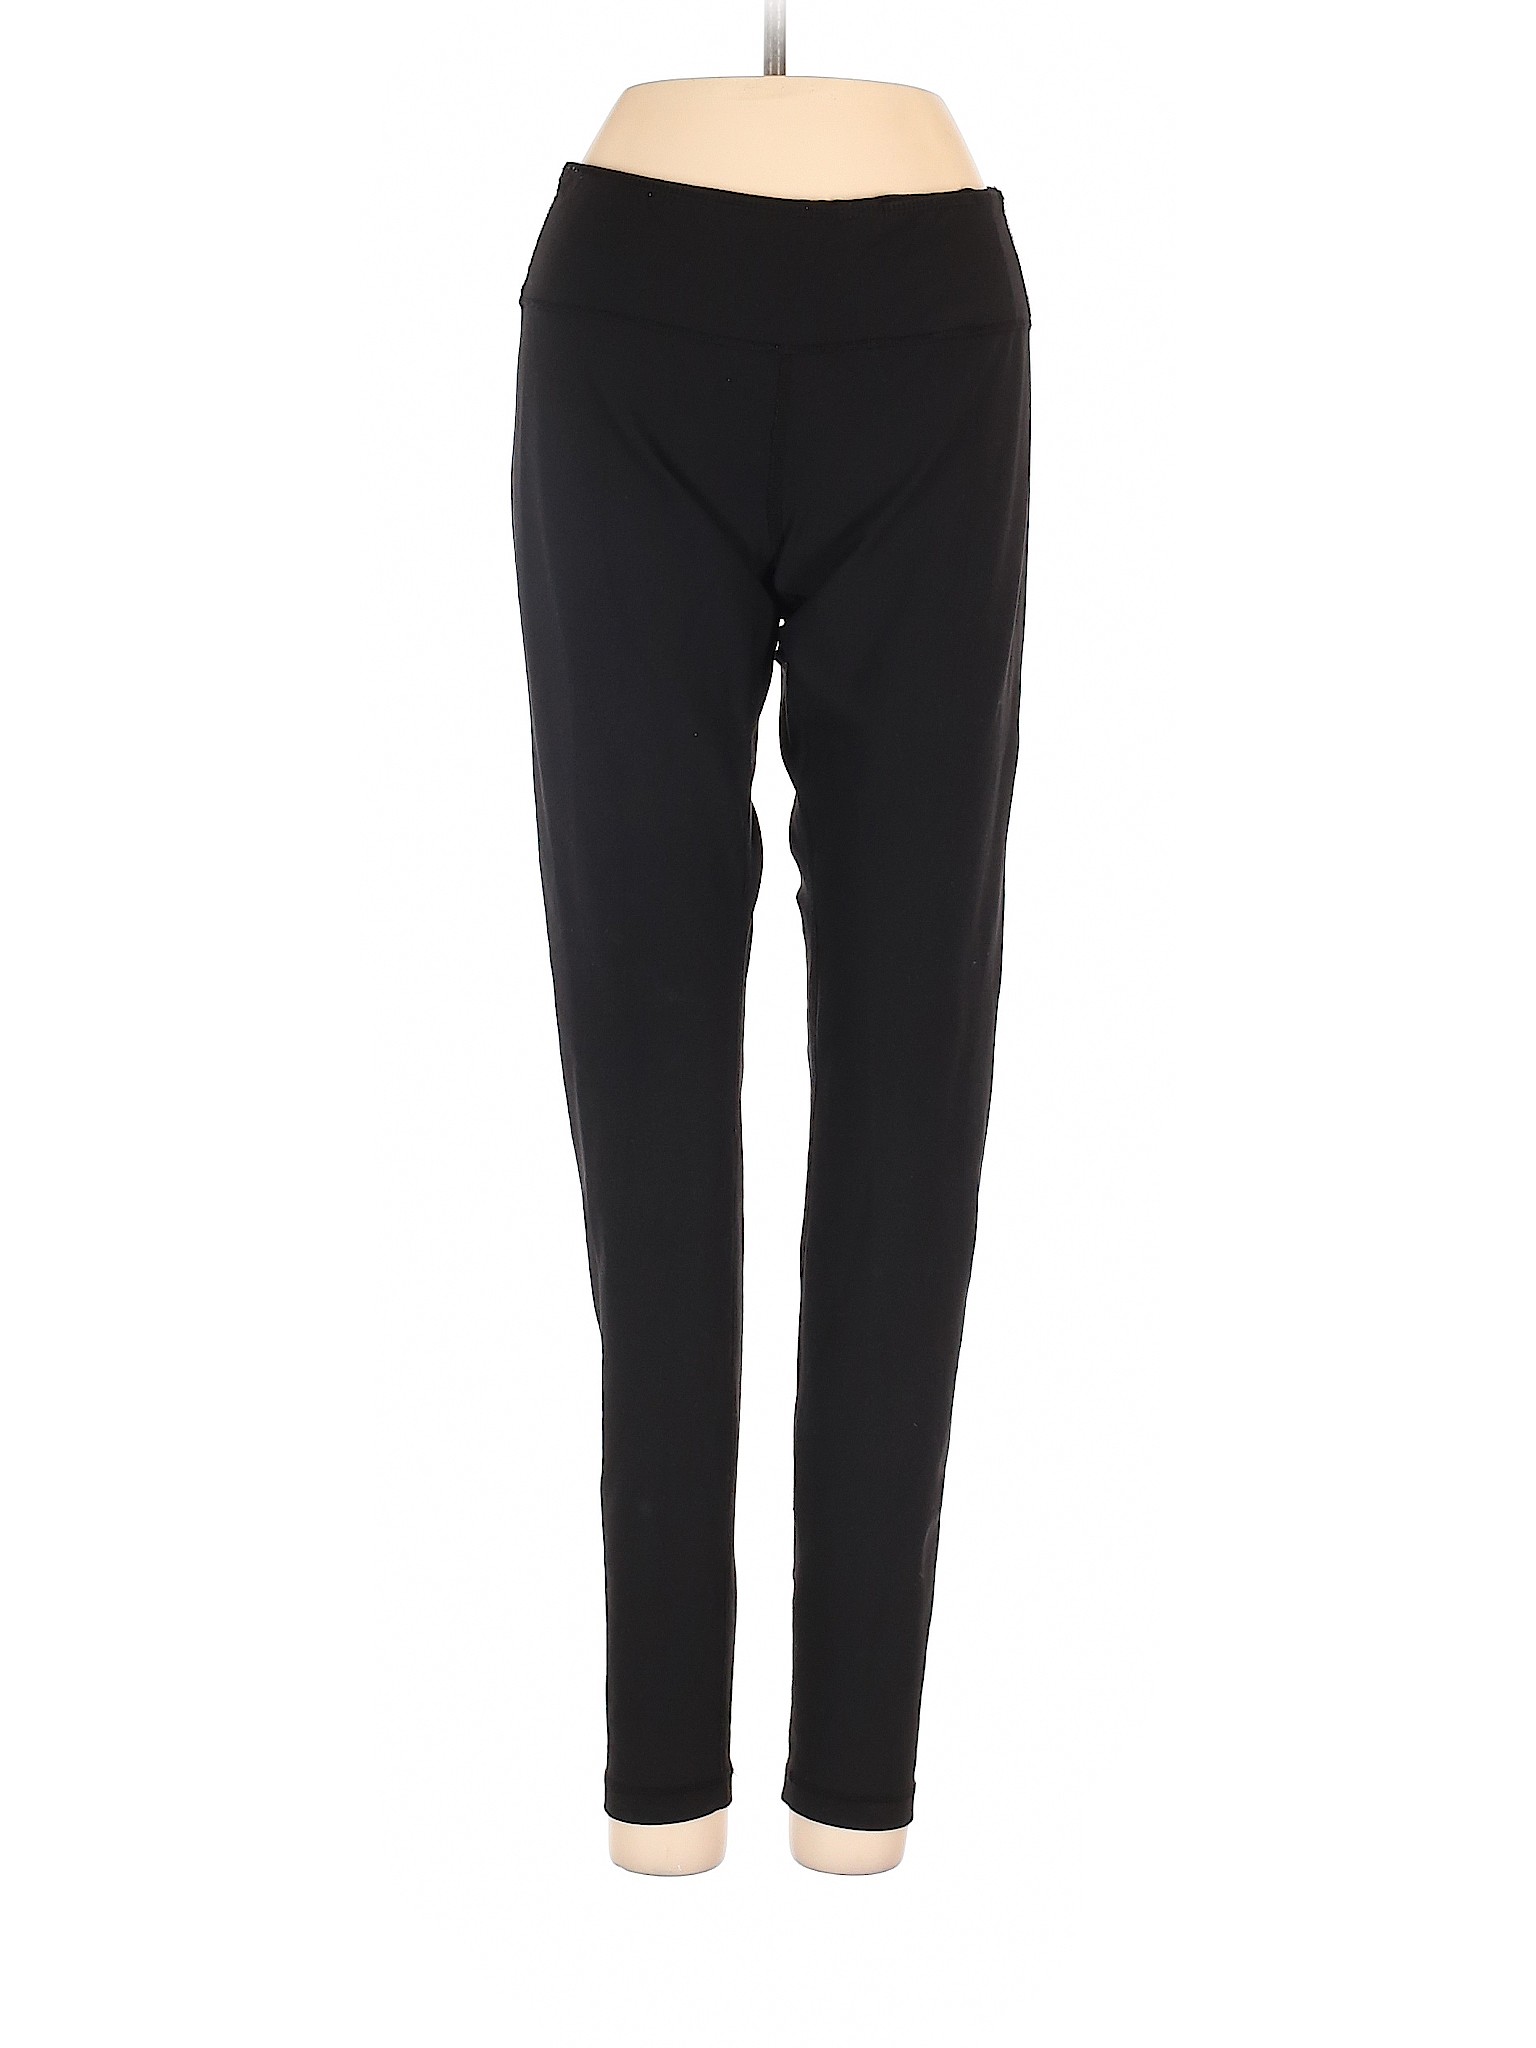 Zella Women Black Active Pants S | eBay